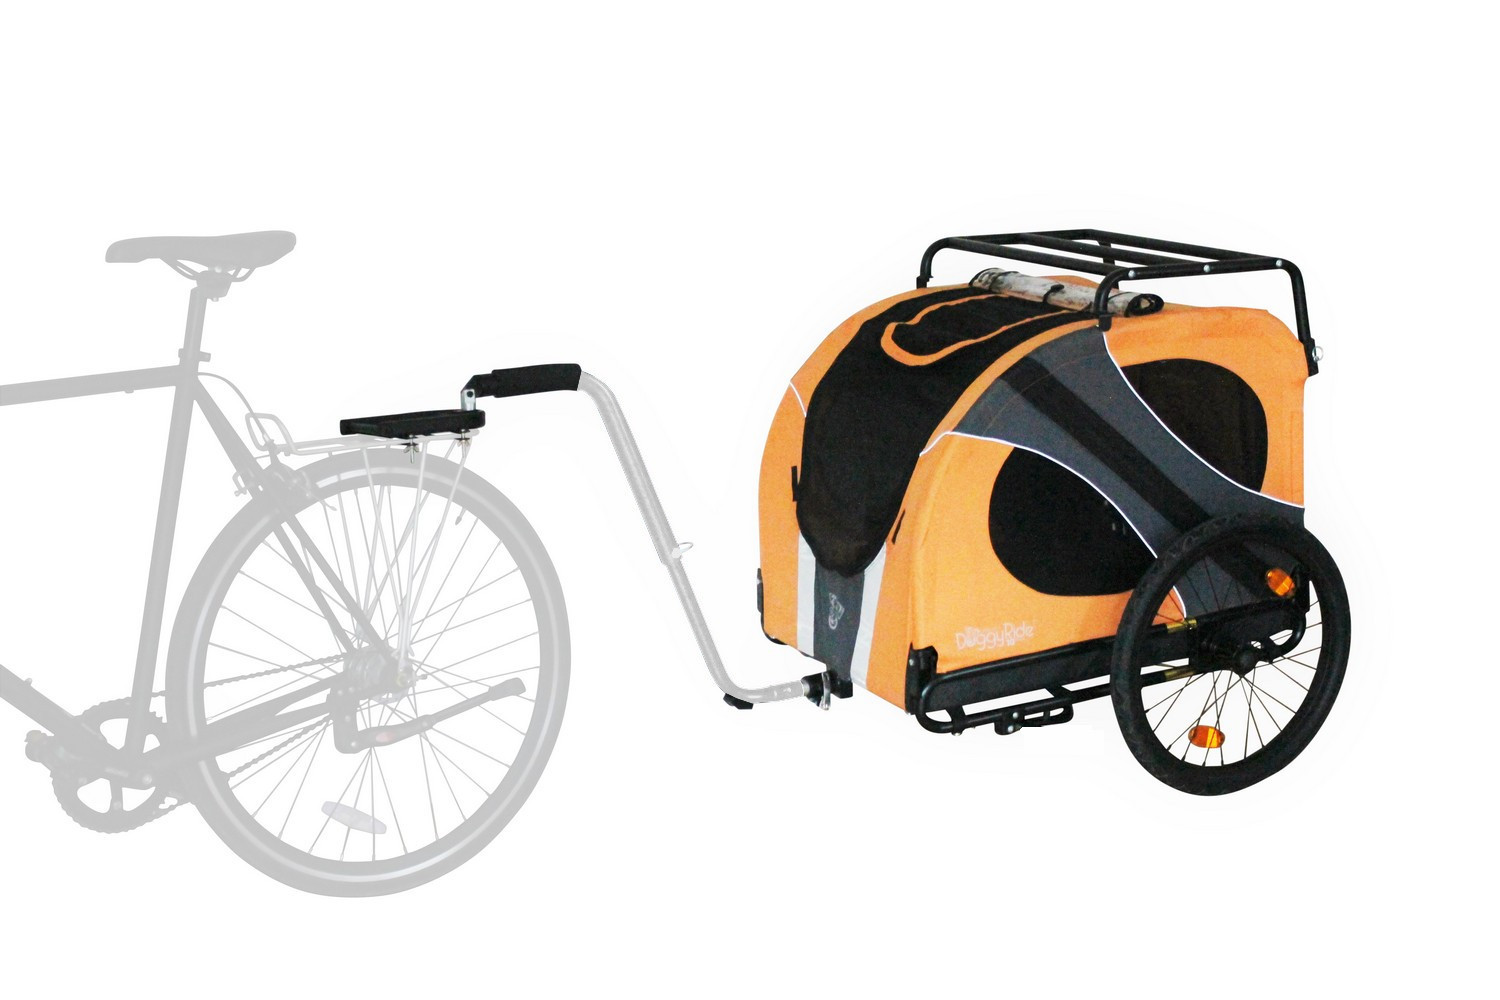 Remorque vélo pour chien DoggyRide Novel15 Trailer orange - Britch Lite  accouplement porte-bagages